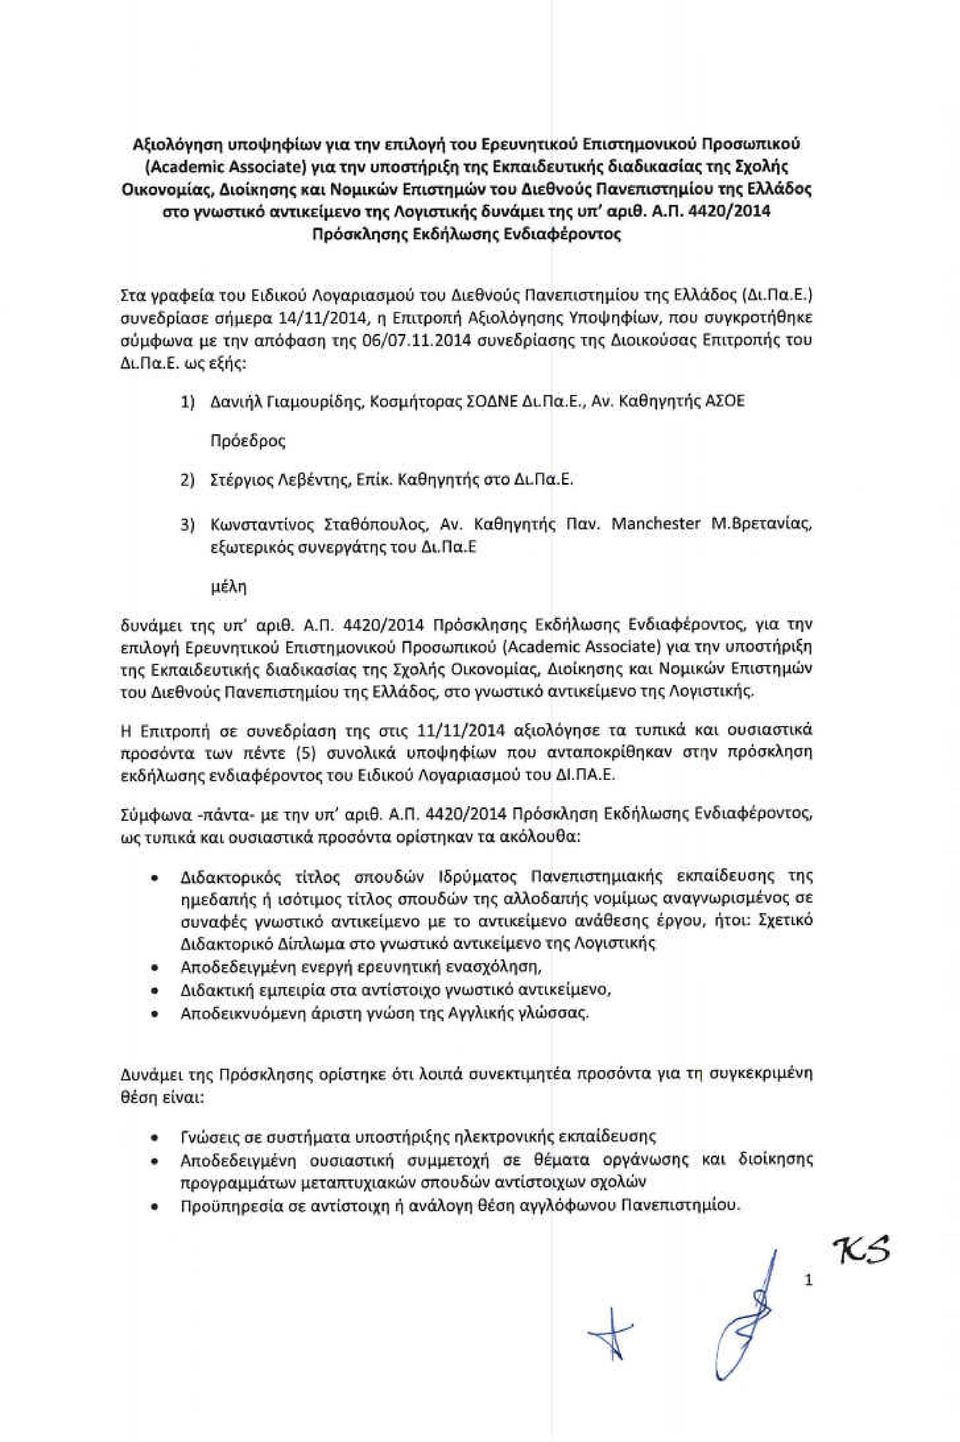 Πα.Ε.) συνεδρίασε σήμερα 14/11/2014, η Επιτροπή Αξιολόγησης Υποψηφίων, που συγκροτήθηκε σύμφωνα με την απόφαση της 06/07.11.2014 συνεδρίασης της Διοικούσας Επιτροπής του ΔιΠα.Ε. ως εξής: 1) Δανιήλ Γιαμουρίδης, Κοσμήτορας ΣΟΔΝΕ Δι.